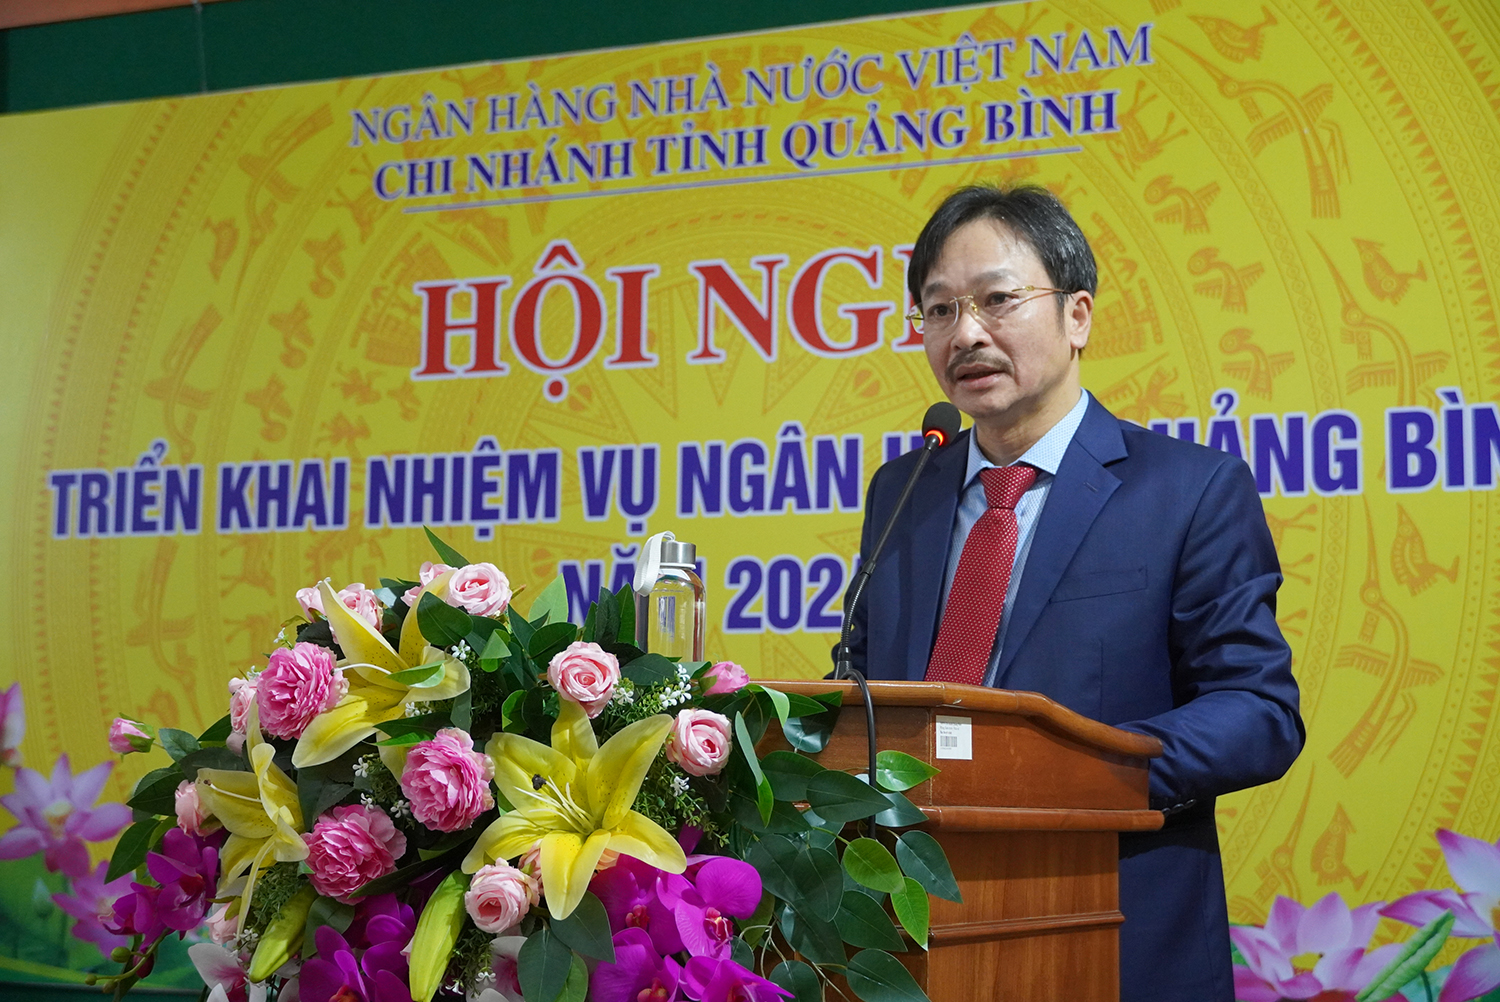 Phó giám đốc phụ trách NHNN chi nhánh Quảng Bình Lương Hải Lưu phát biểu tại hội nghị.